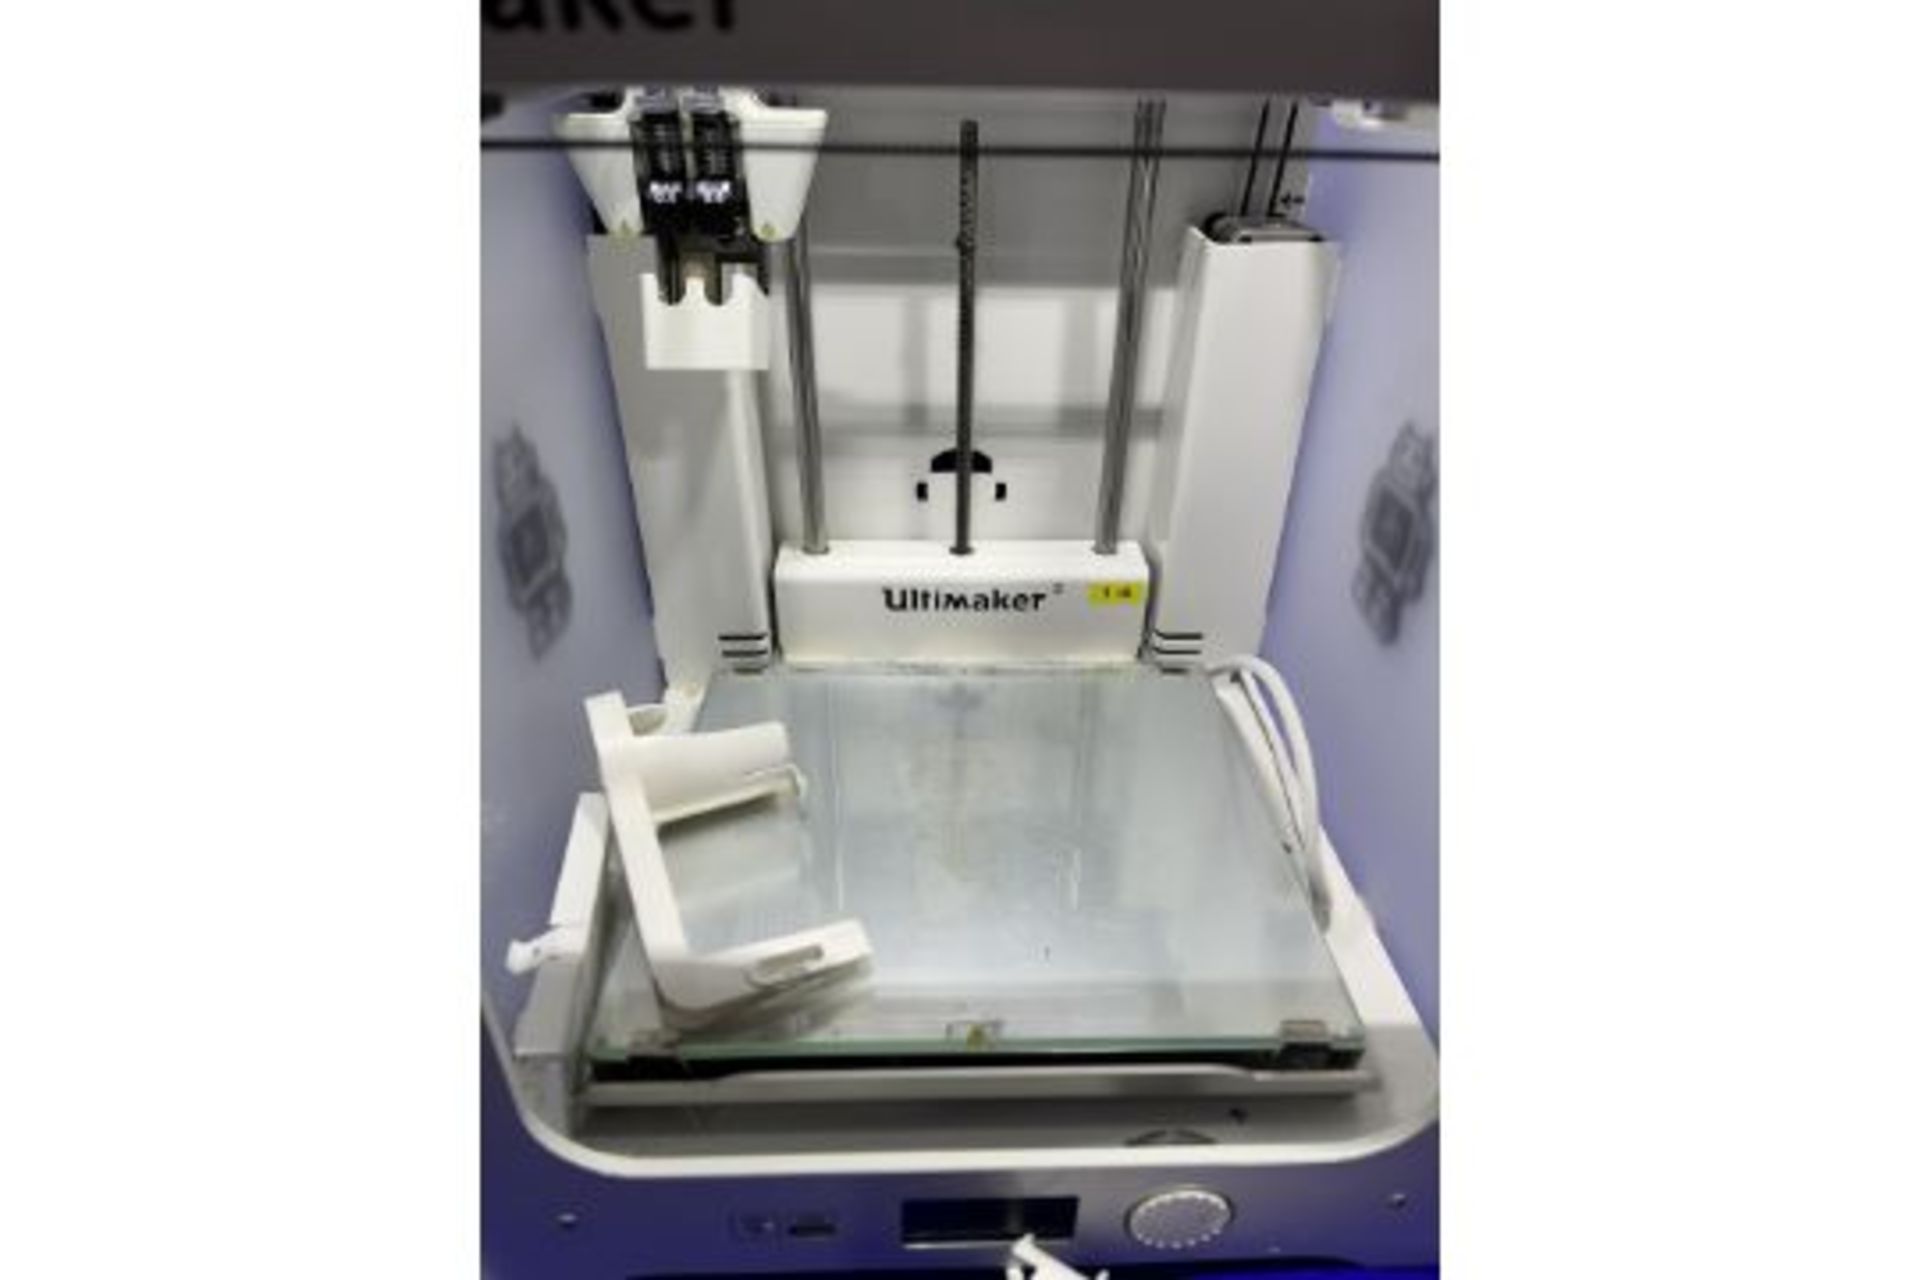 Ultimaker Model 3 3D printer - Image 2 of 4